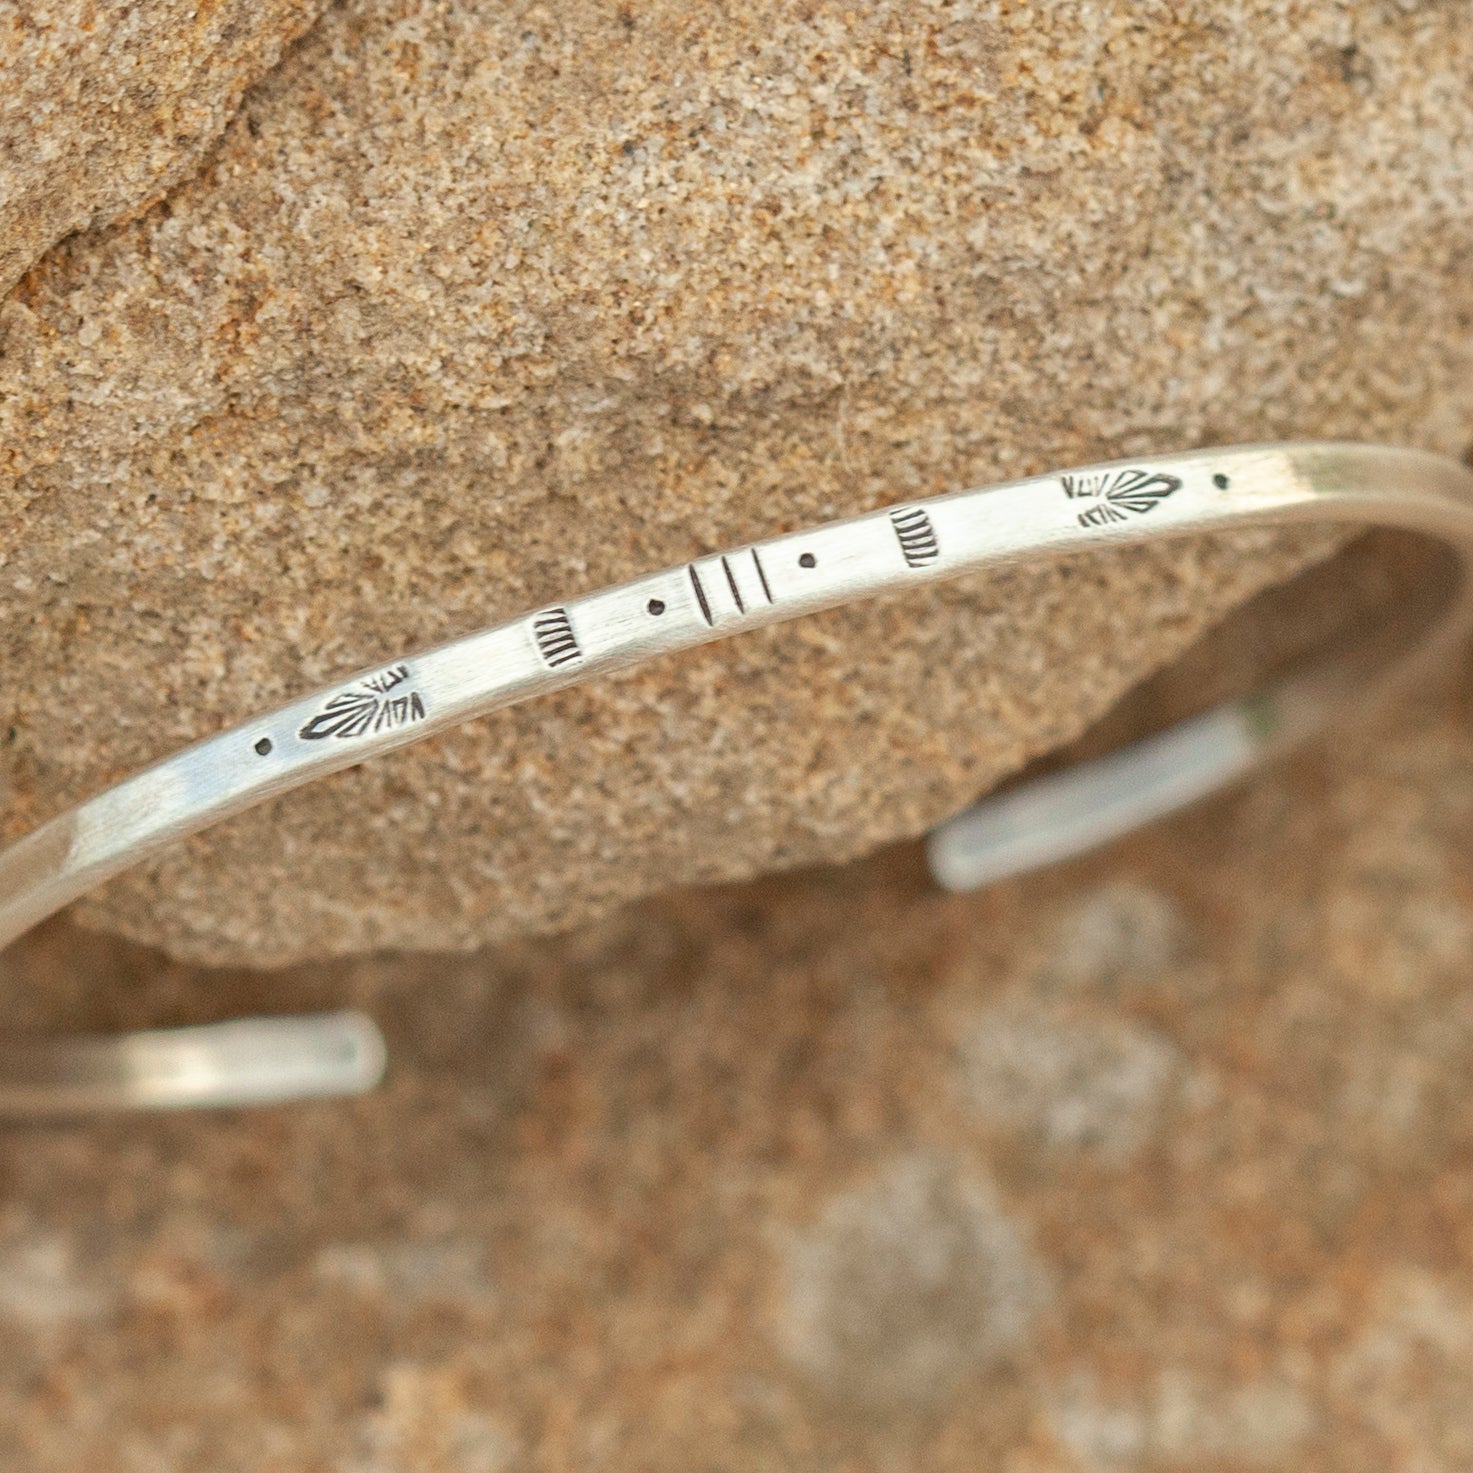 OOAK Ethnic bracelet in silver #10 • size 6cm (ready-to-ship)